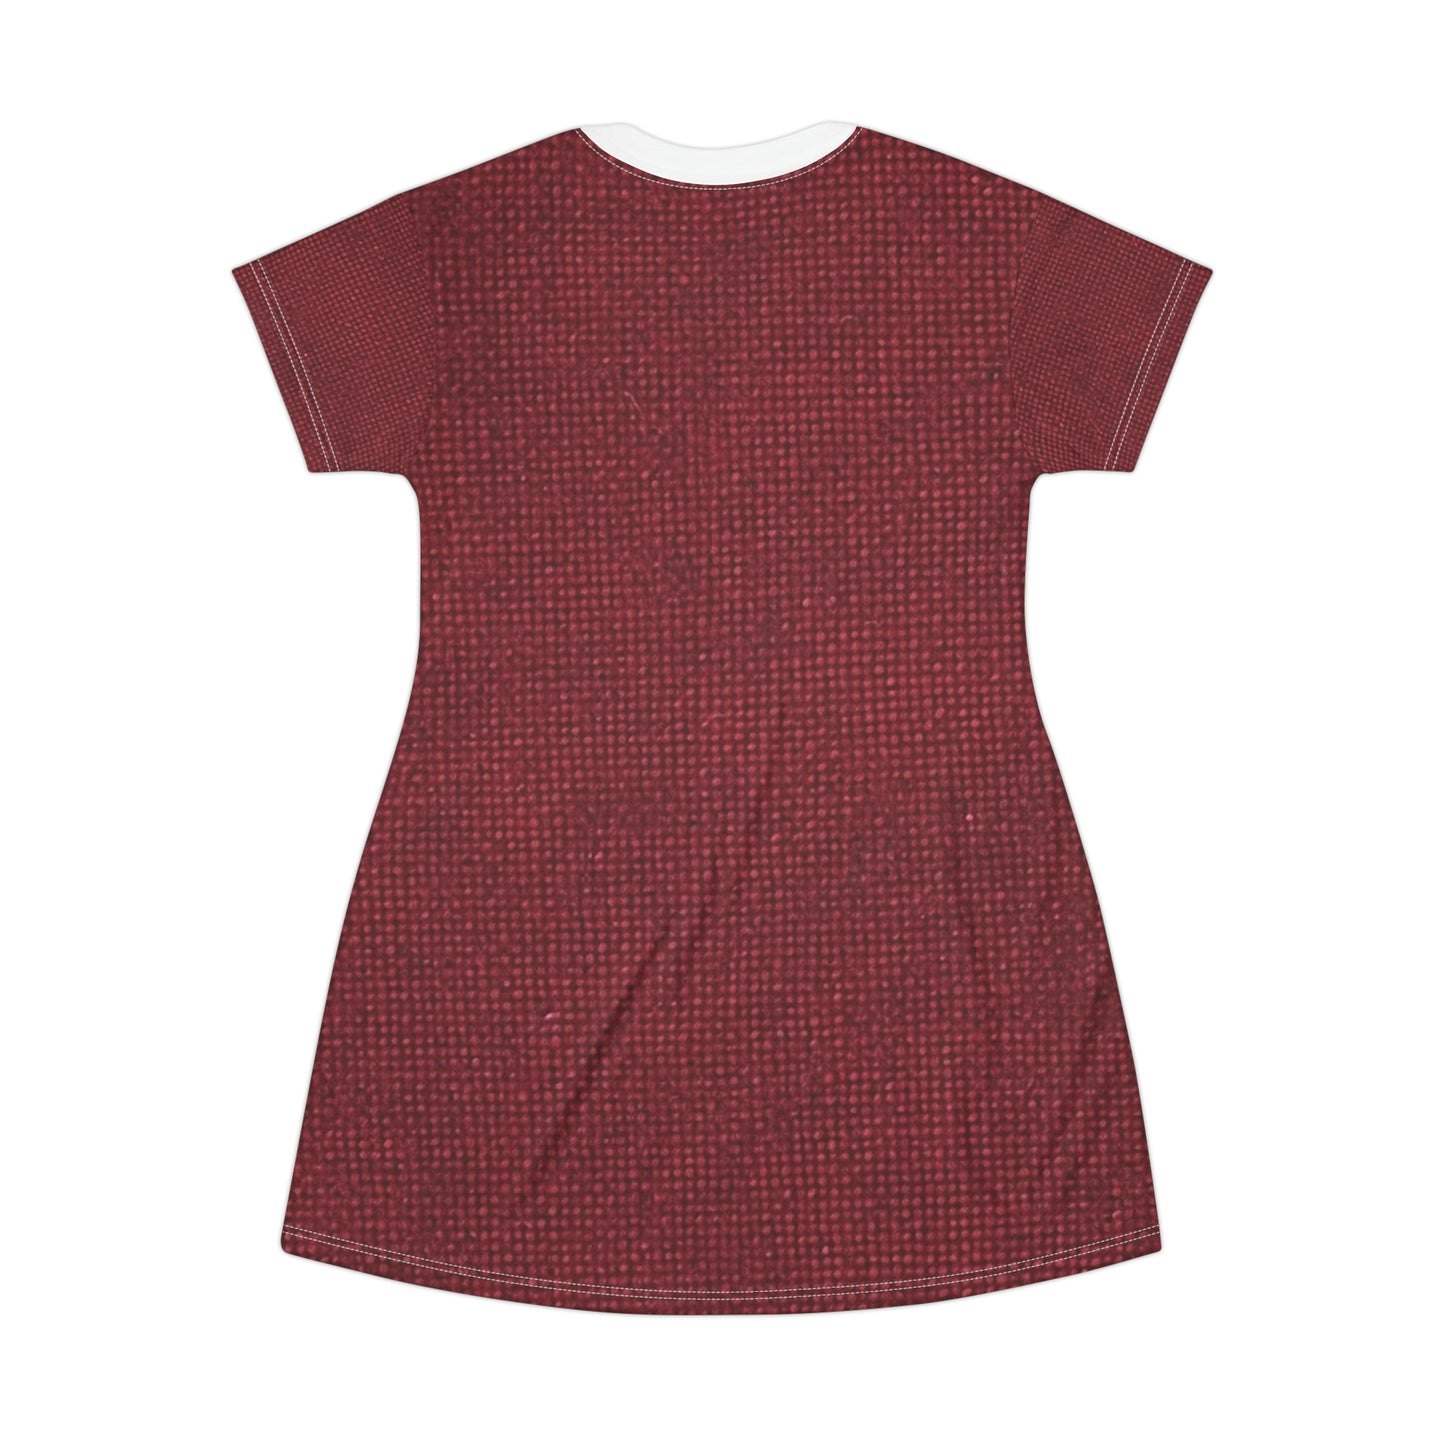 Seamless Texture - Maroon/Burgundy Denim-Inspired Fabric - T-Shirt Dress (AOP)